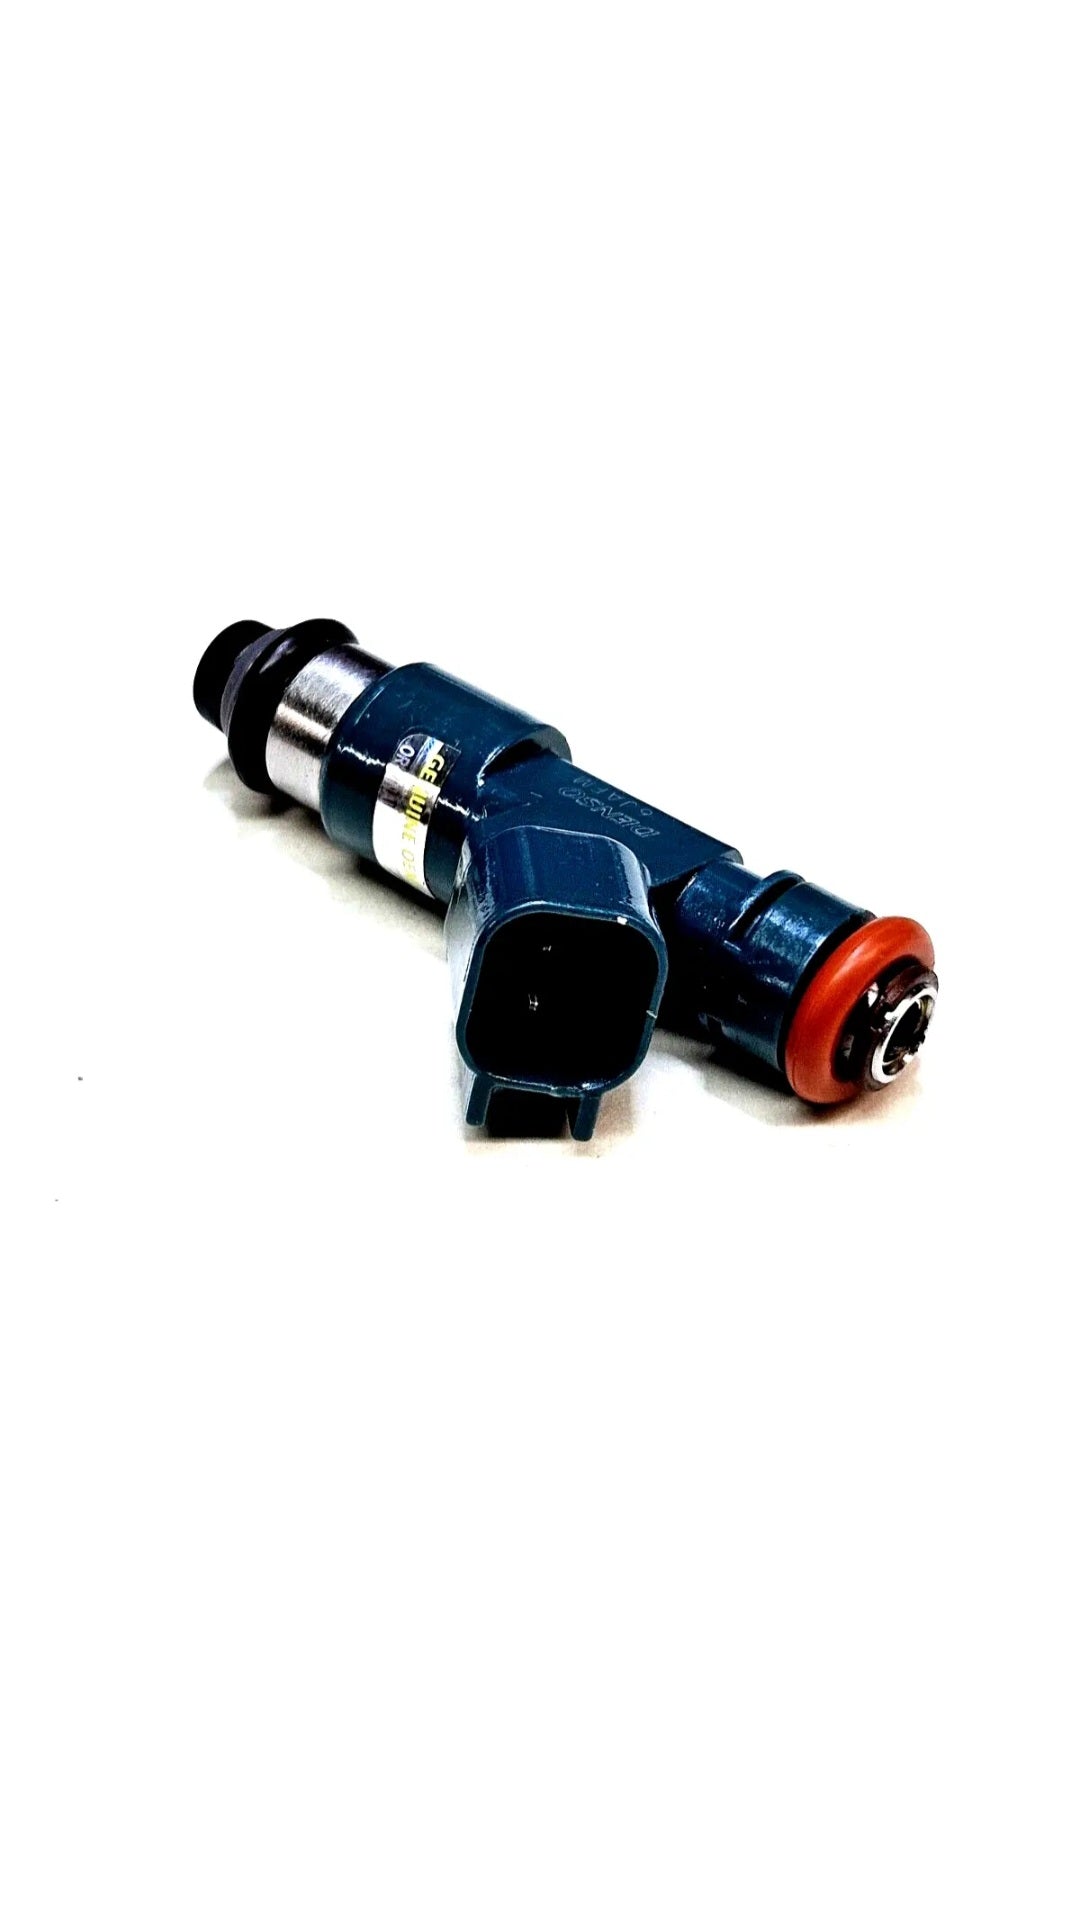 Single Genuine Denso 6G9N-AB / LR001982 / 30777501 / 297500-0250 fuel injector.